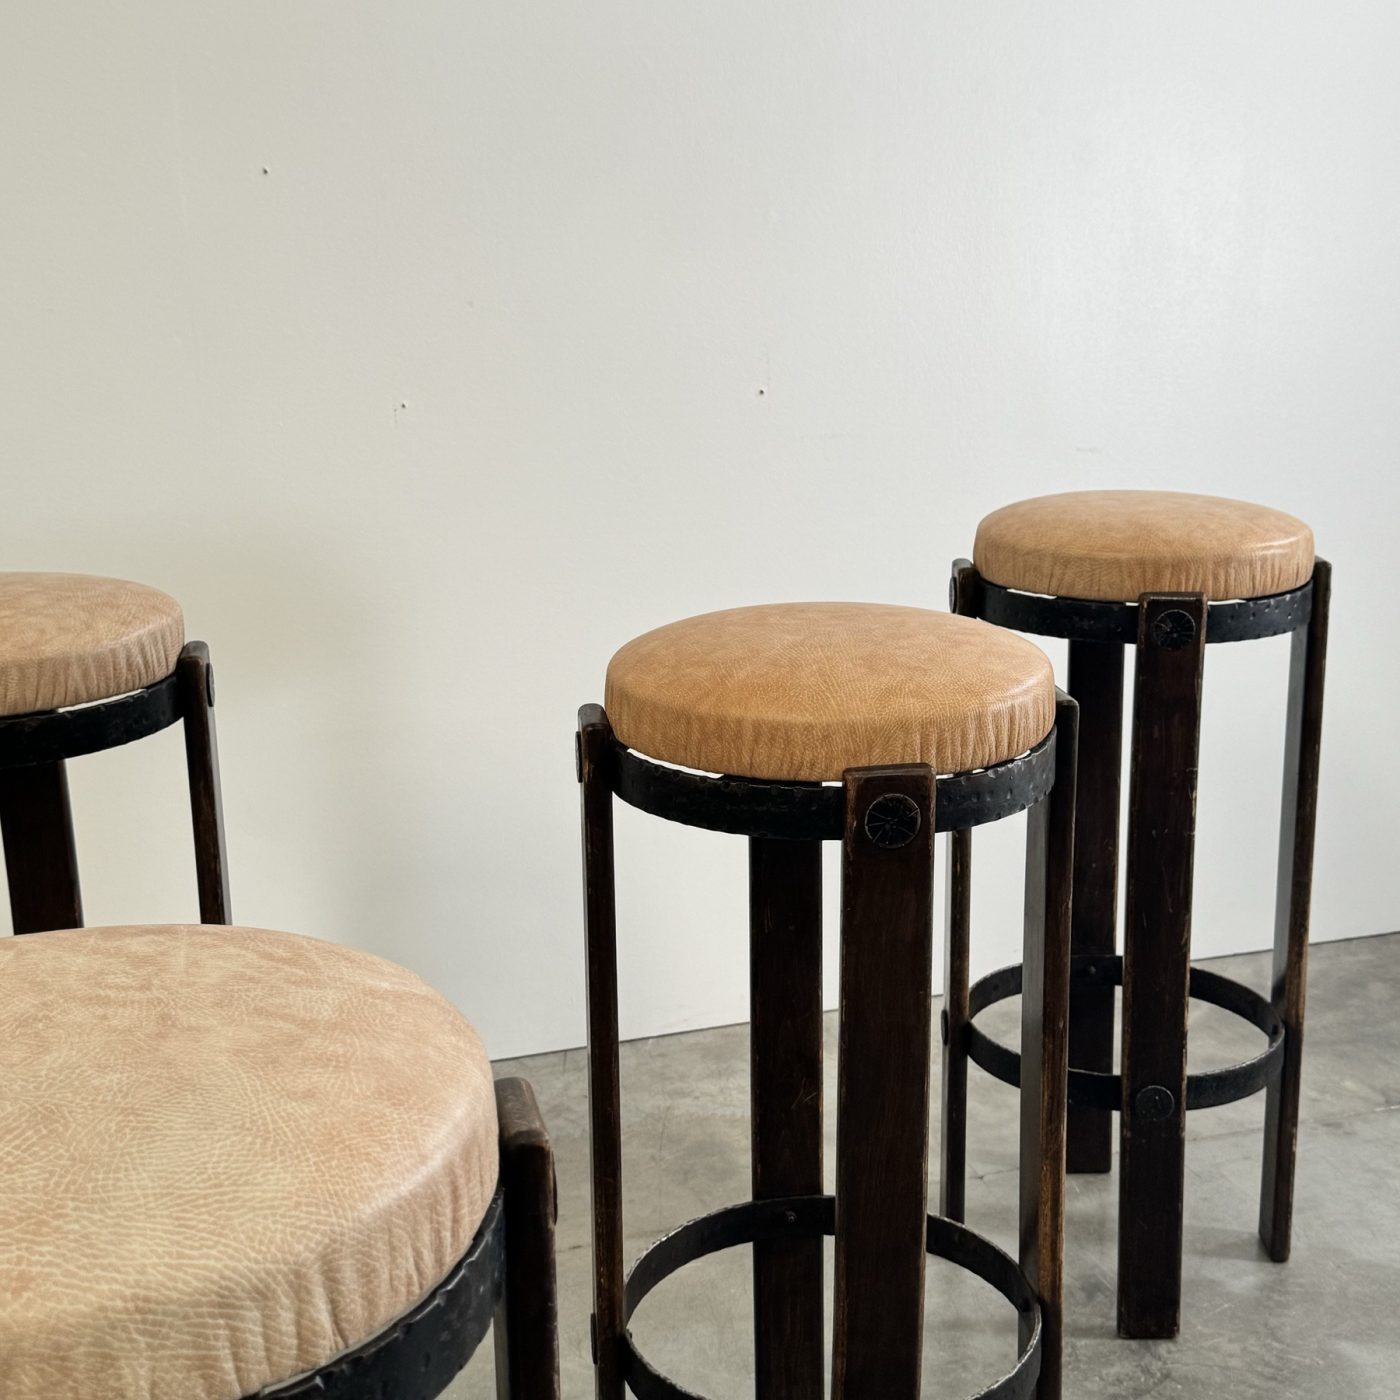 objet-vagabond-stools0007